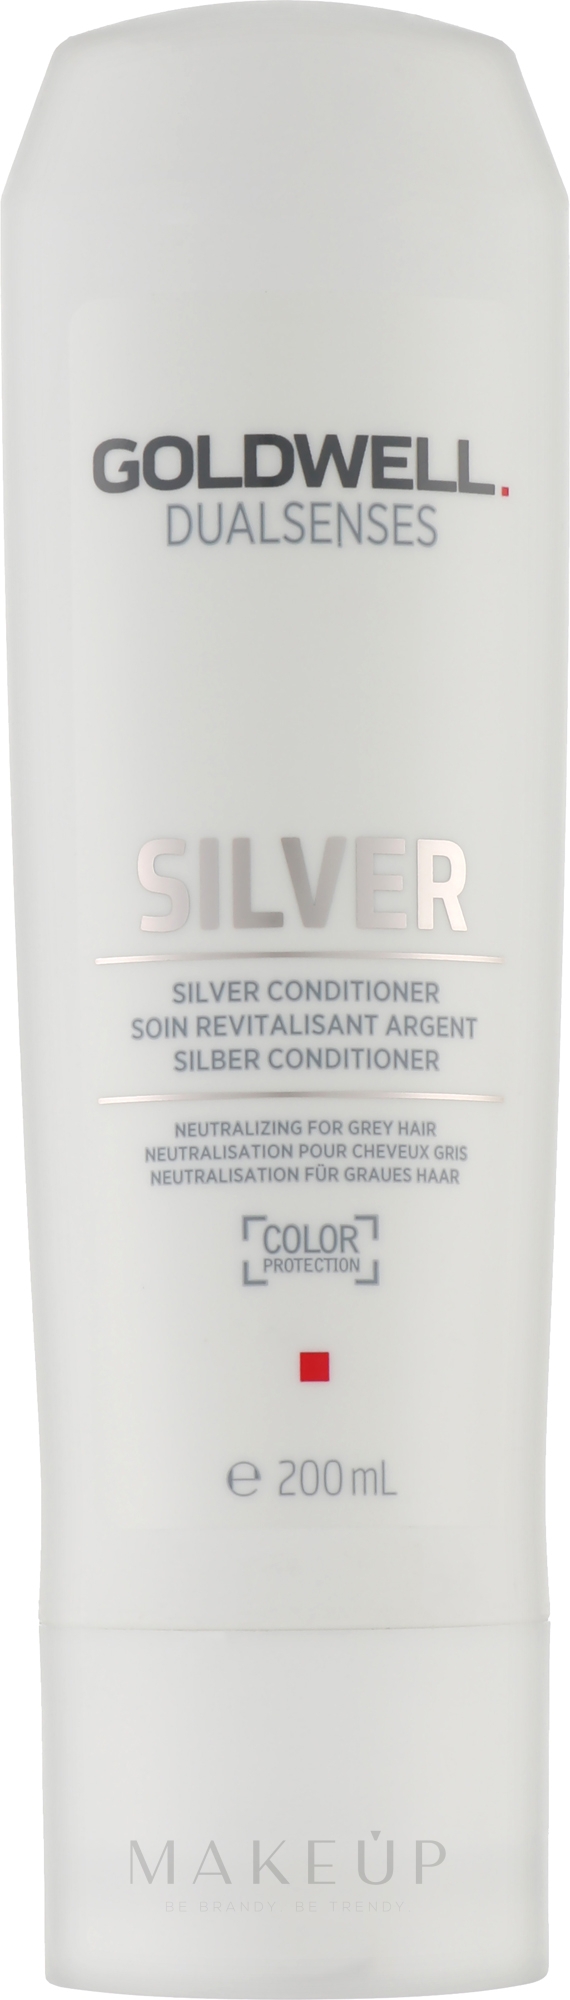 Conditioner für helles und graues Haar - Goldwell Dualsenses Silver Conditioner — Bild 200 ml